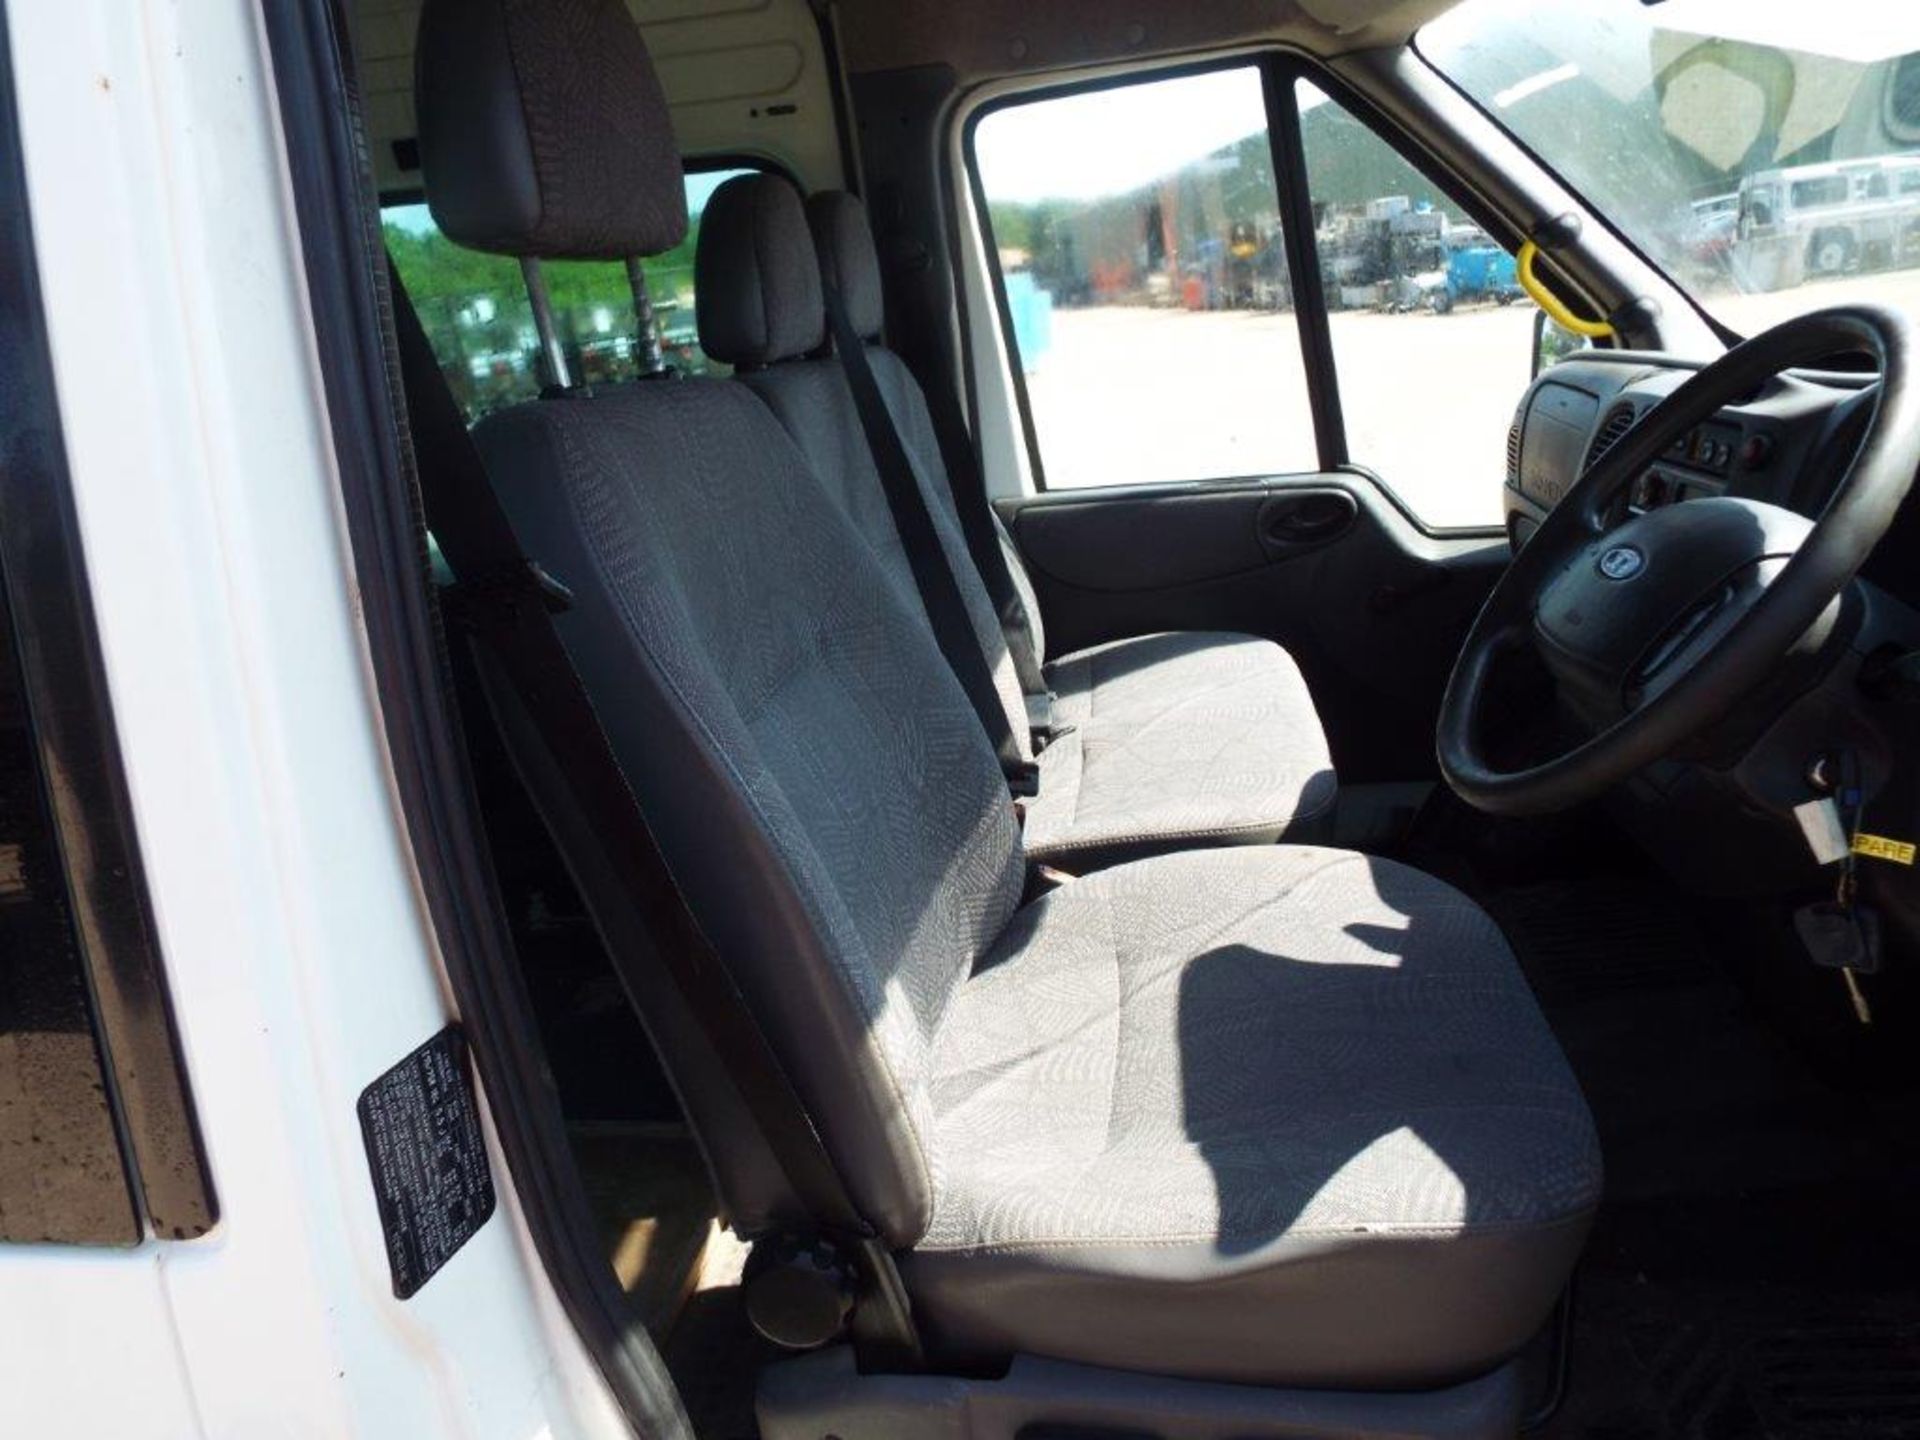 Ford Transit 9 Seat Minibus - Image 12 of 21